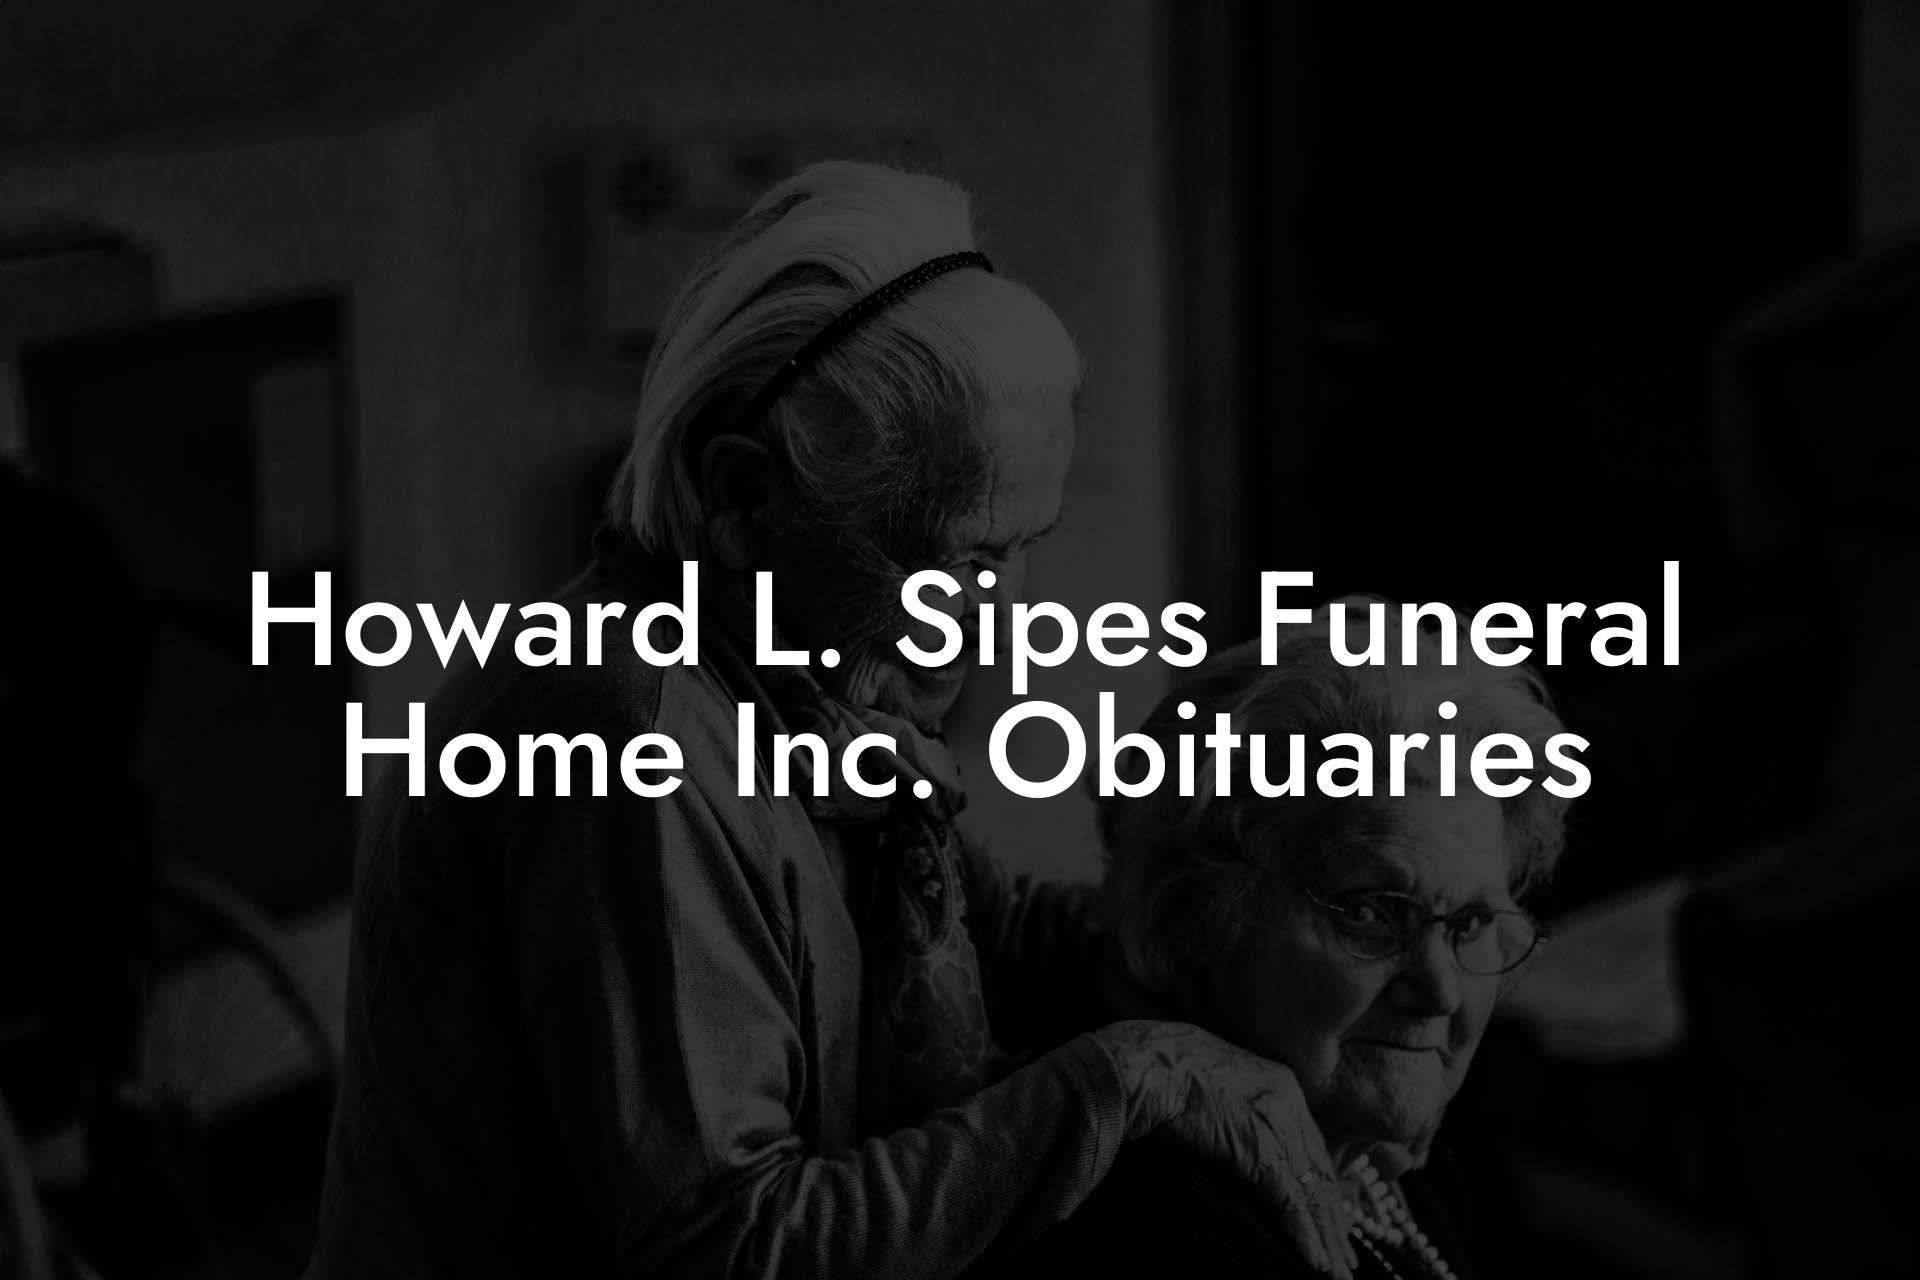 Howard L. Sipes Funeral Home Inc. Obituaries